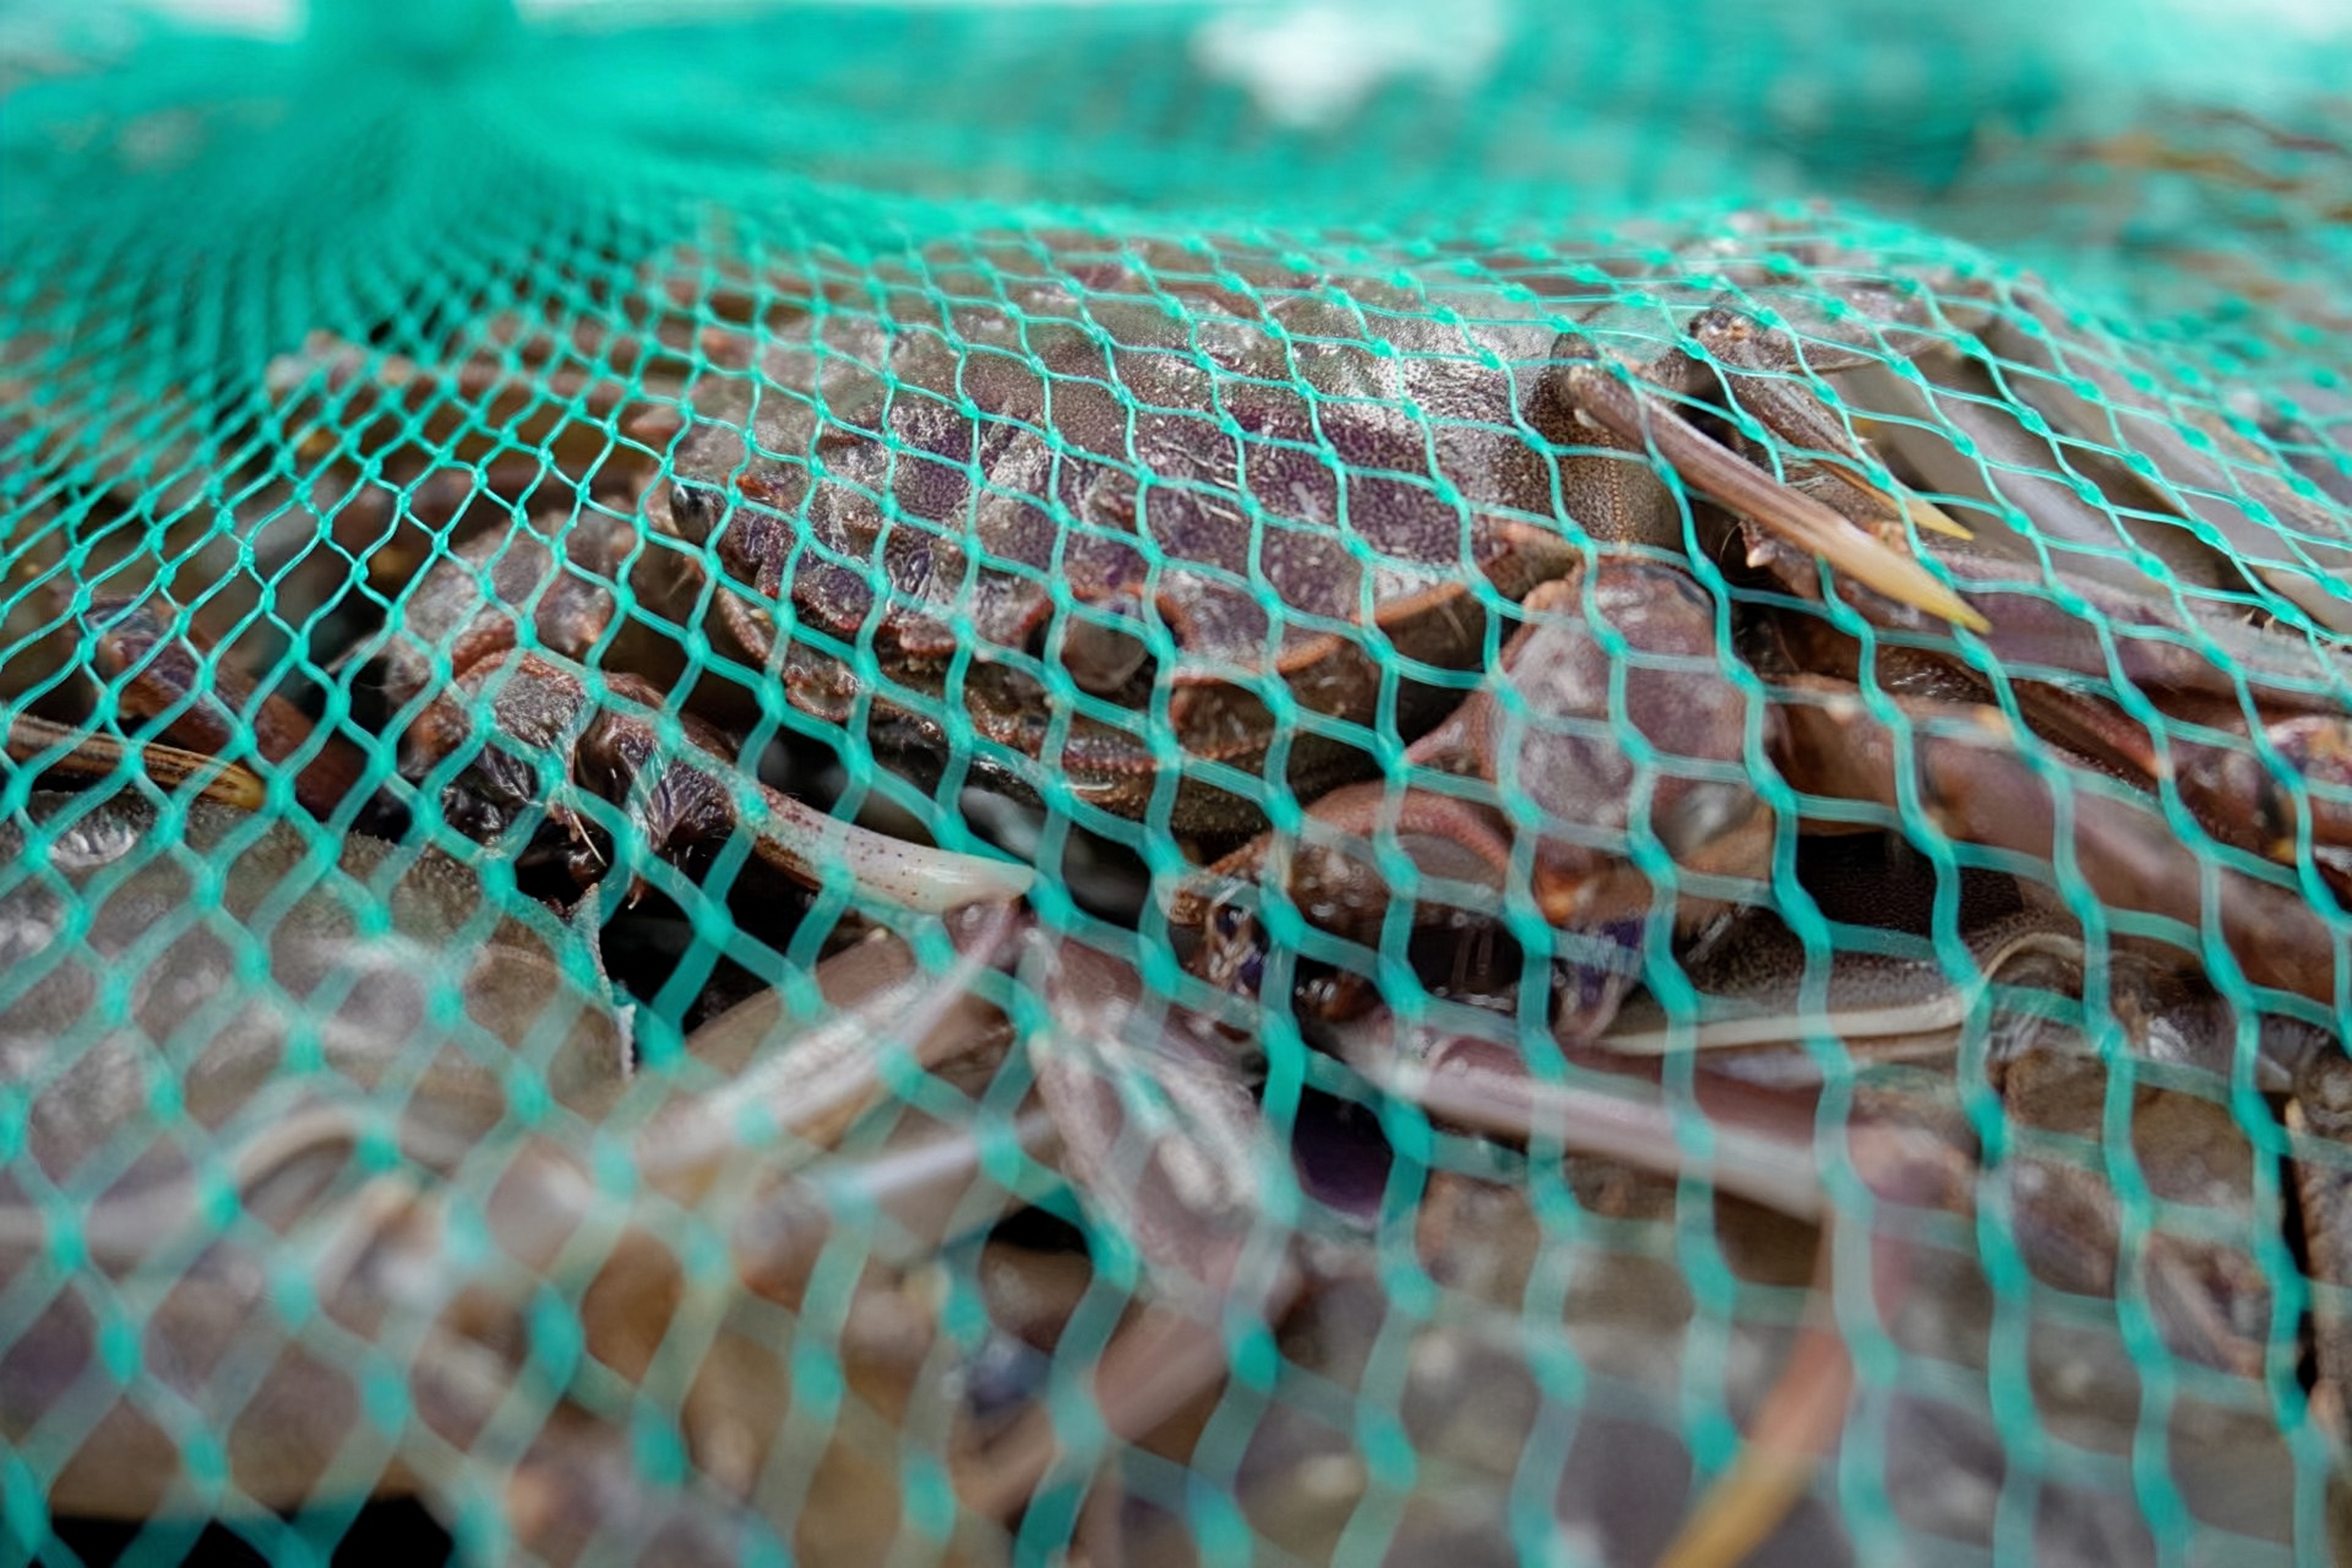 漁民捕撈的九江河鮮毛蟹。佛山市南海區九江鎮宣傳文體旅游辦供圖